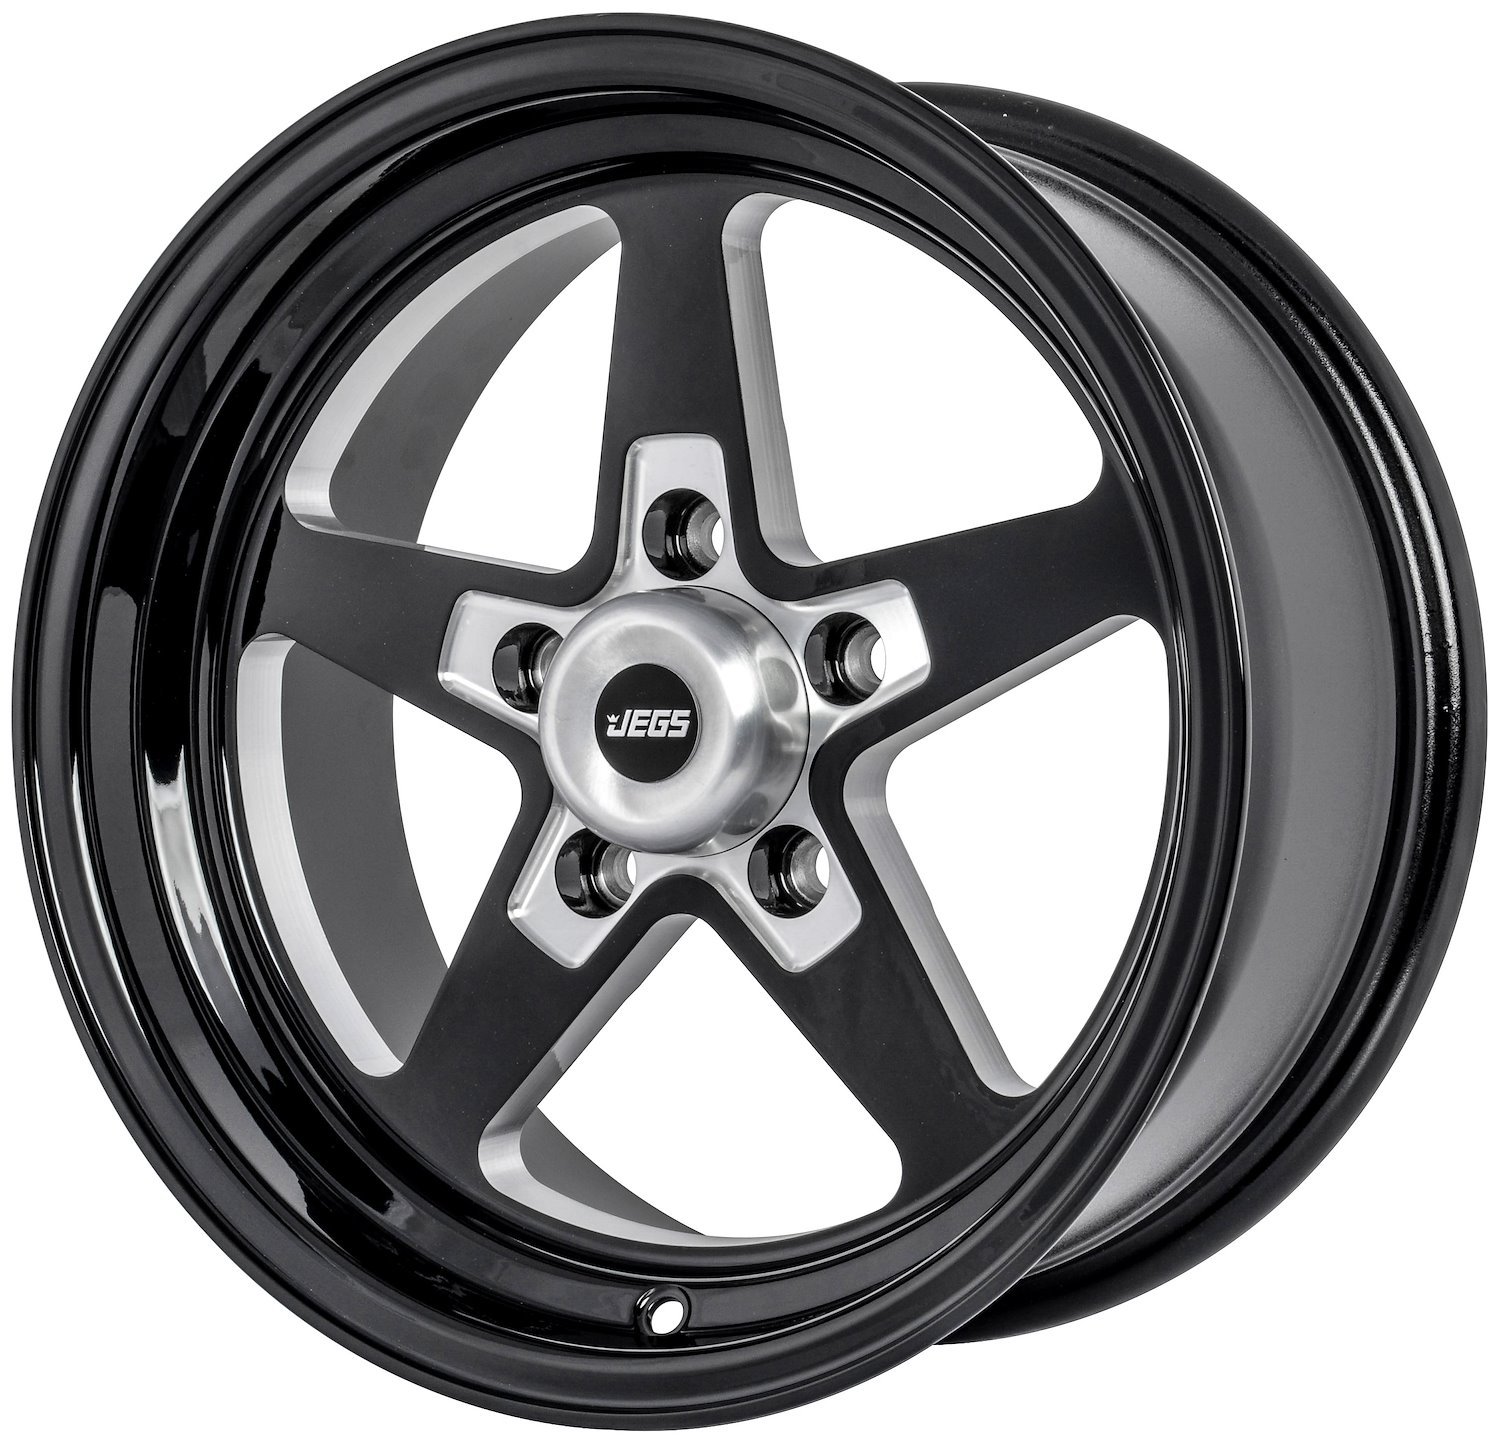 SSR Star Wheel [15" x 7"] Gloss Black